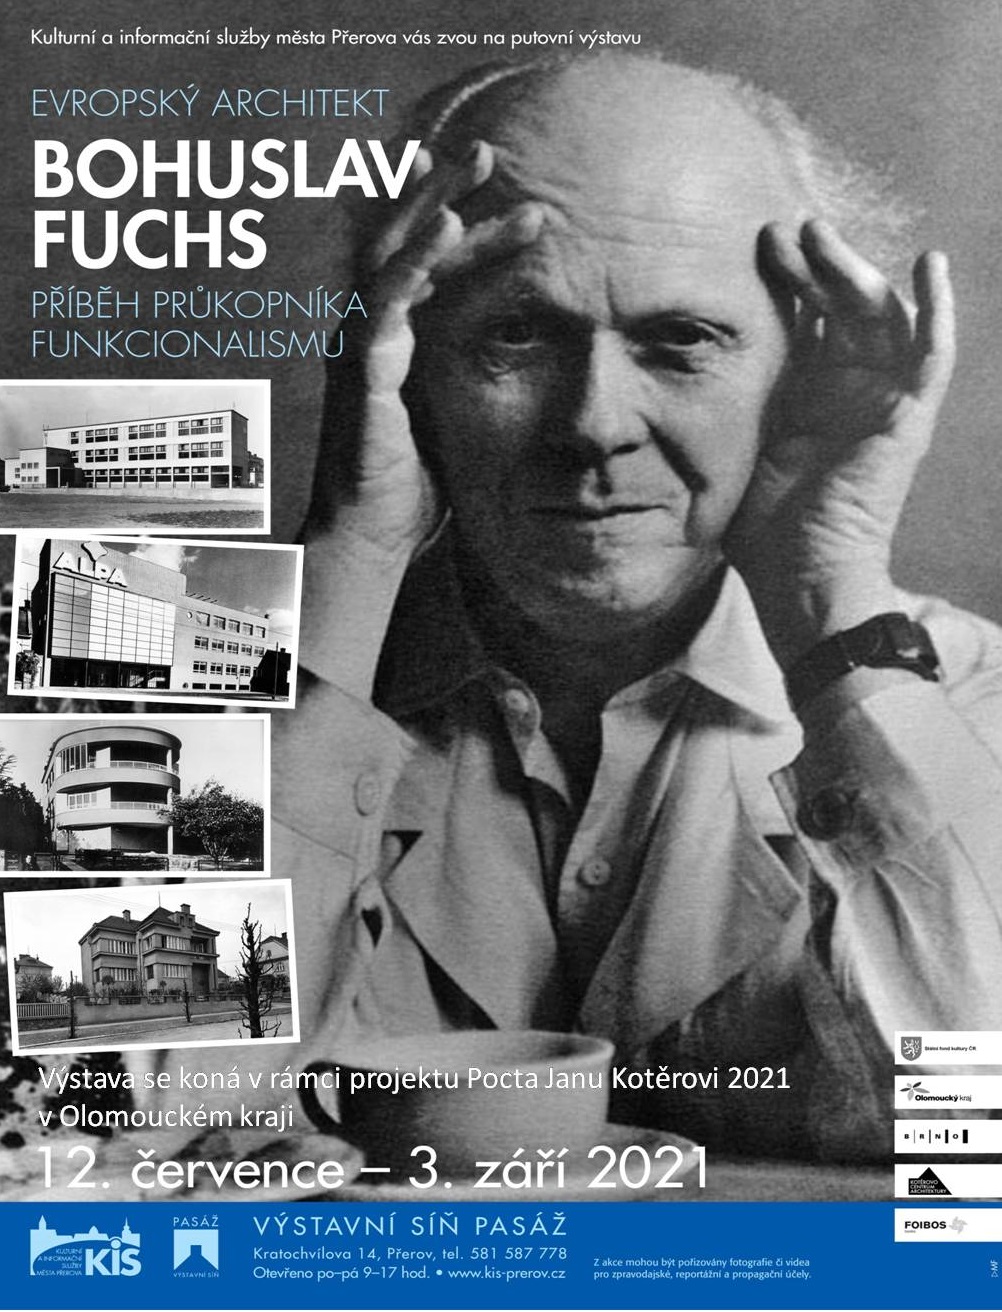 Výstava Evropský architekt Bohuslav Fuchs v Přerově